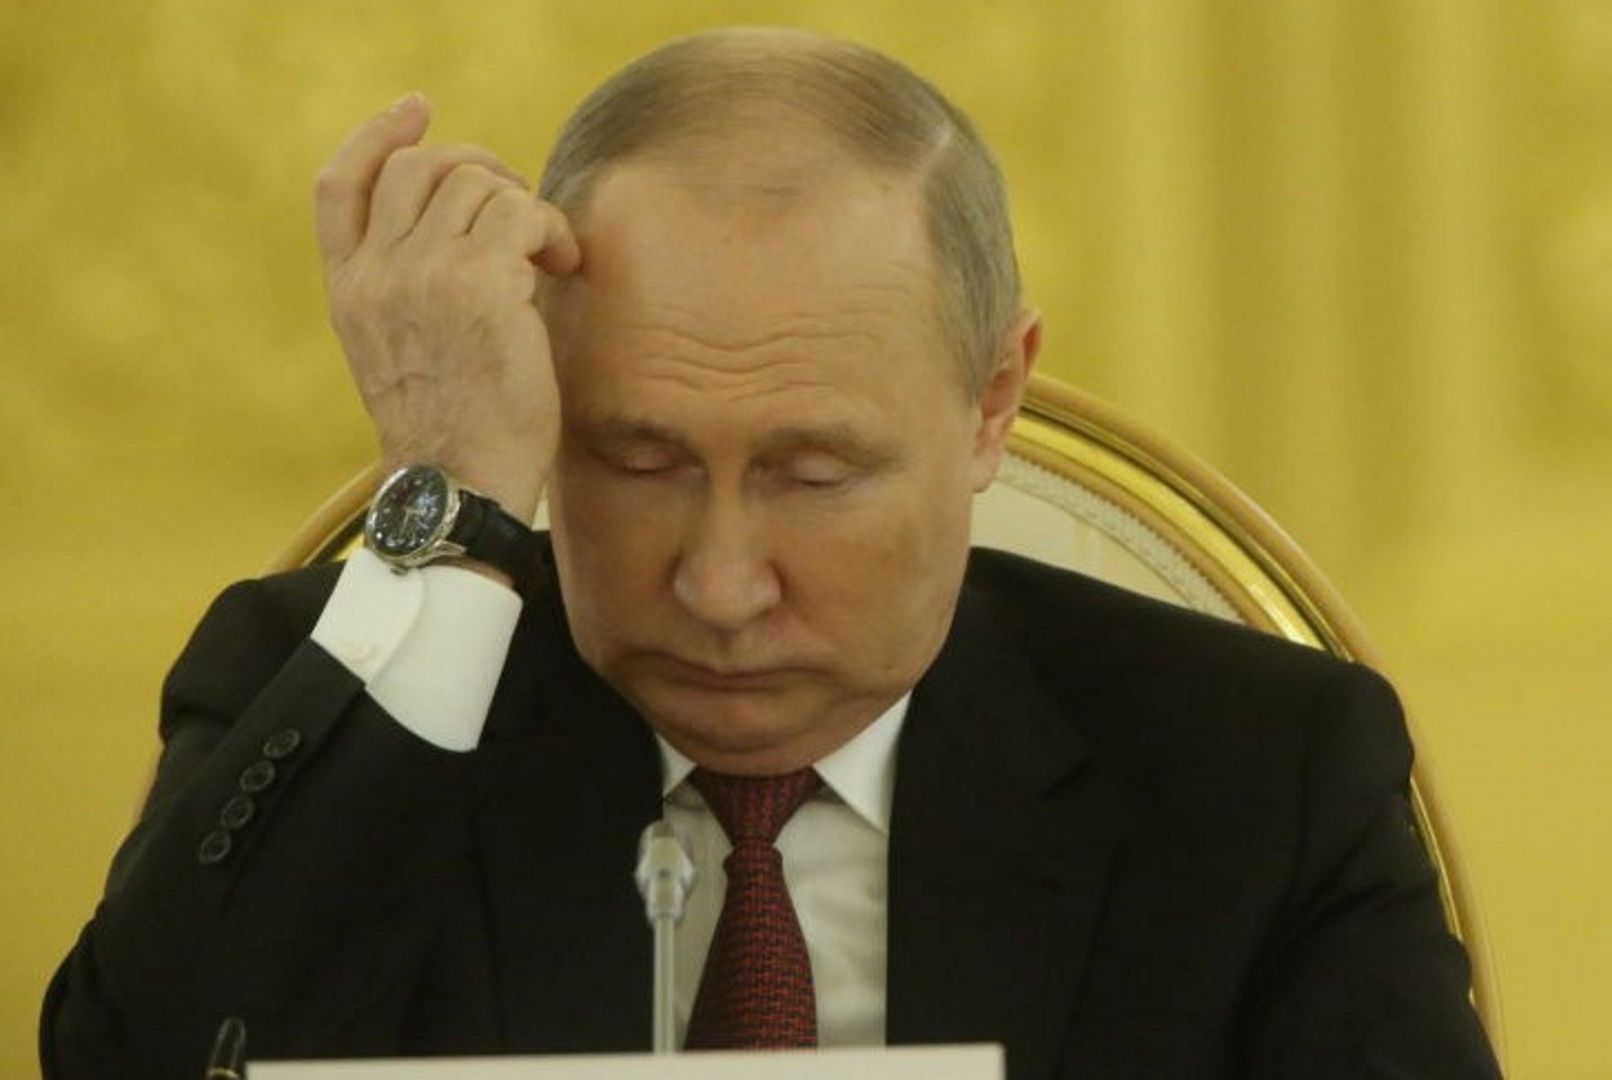 Nieoficjalnie: Putin zasłabł po spotkaniu. Wyciekły zalecenia lekarza